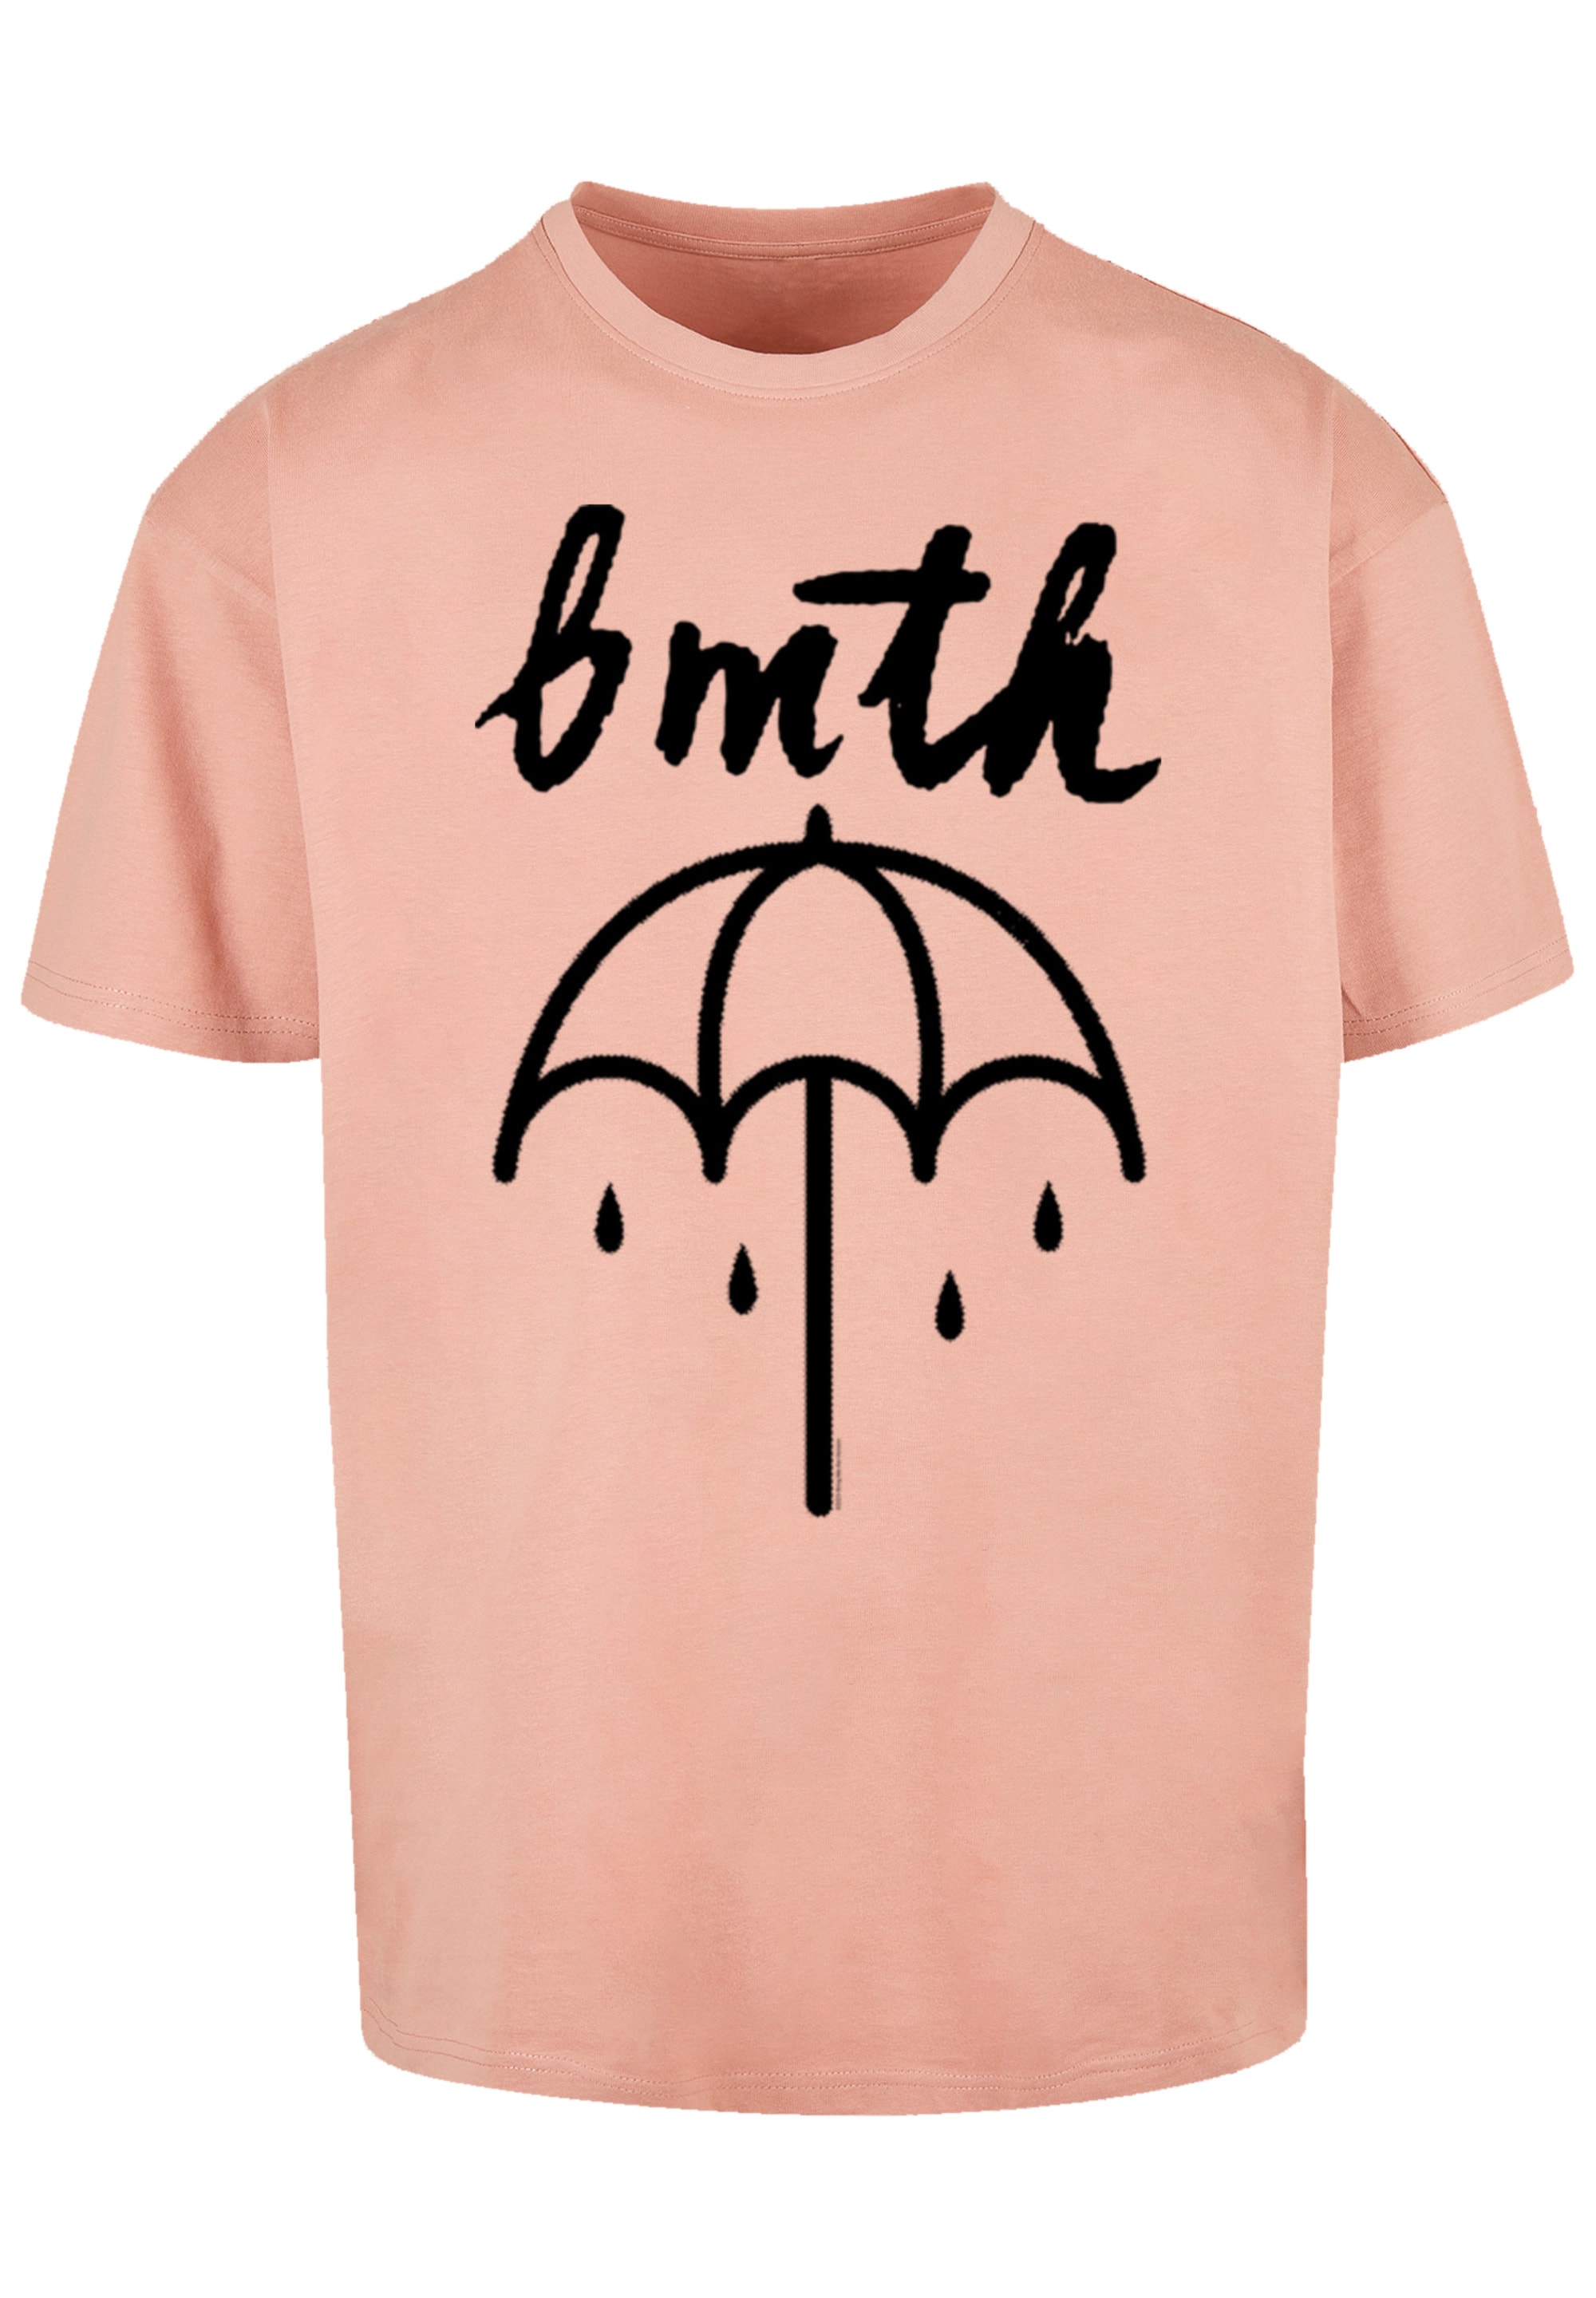 Band BAUR T-Shirt Band Rock-Musik, »BMTH F4NT4STIC Umbrella«, | für Premium ▷ Qualität, Metal